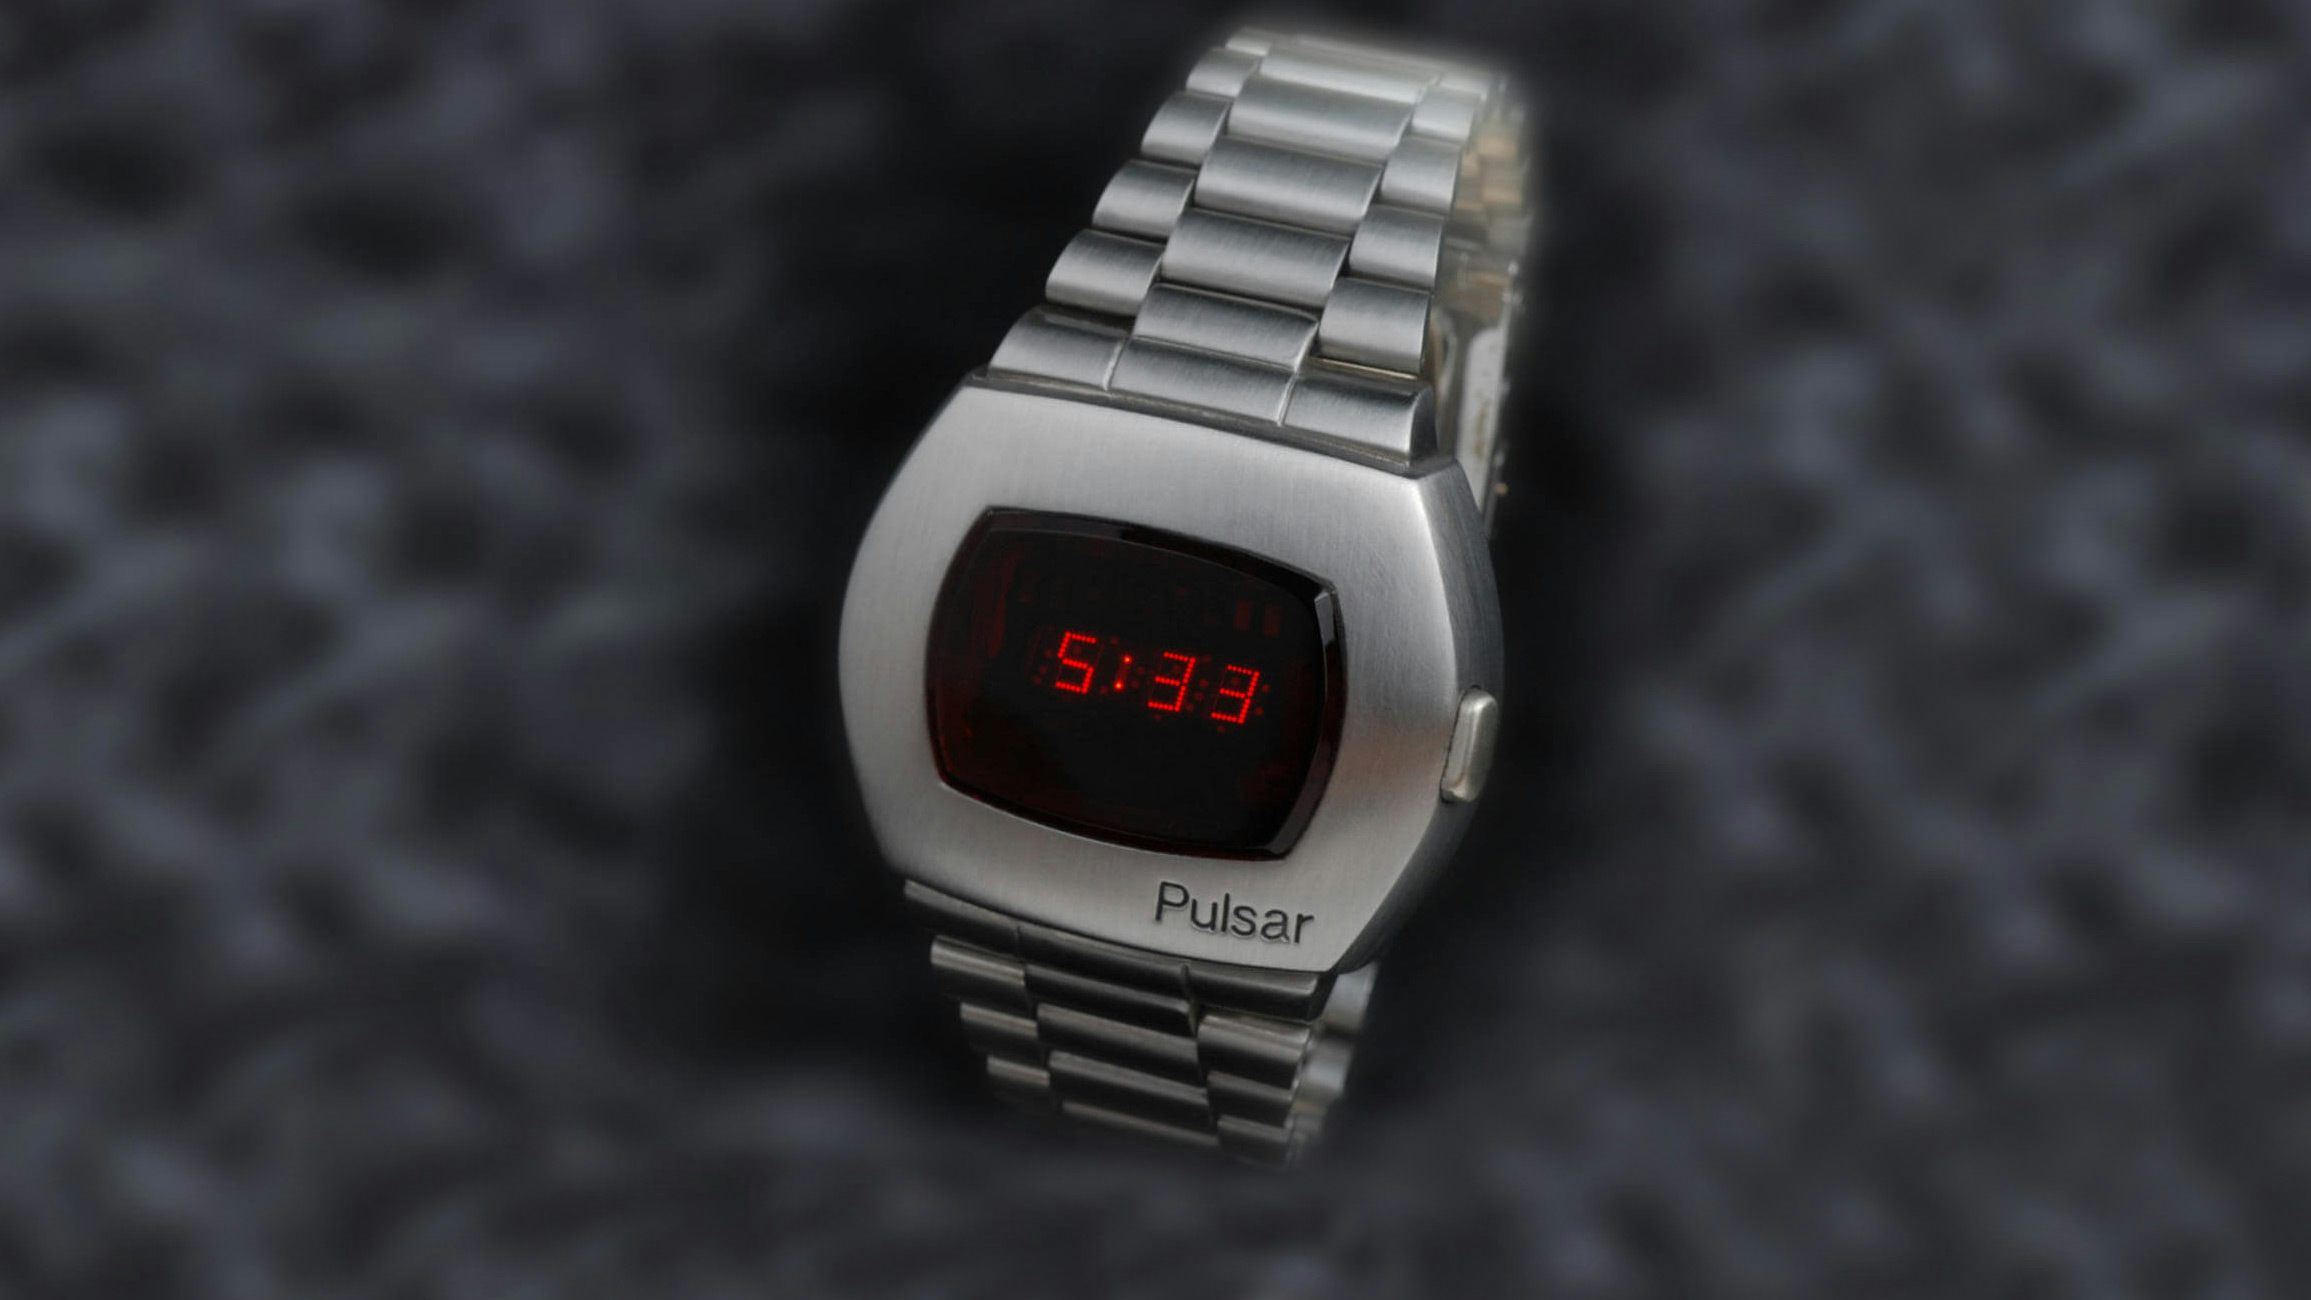 HAMILTON製の時計です。米国サンマイクロシステムズ社のロゴが入っています。